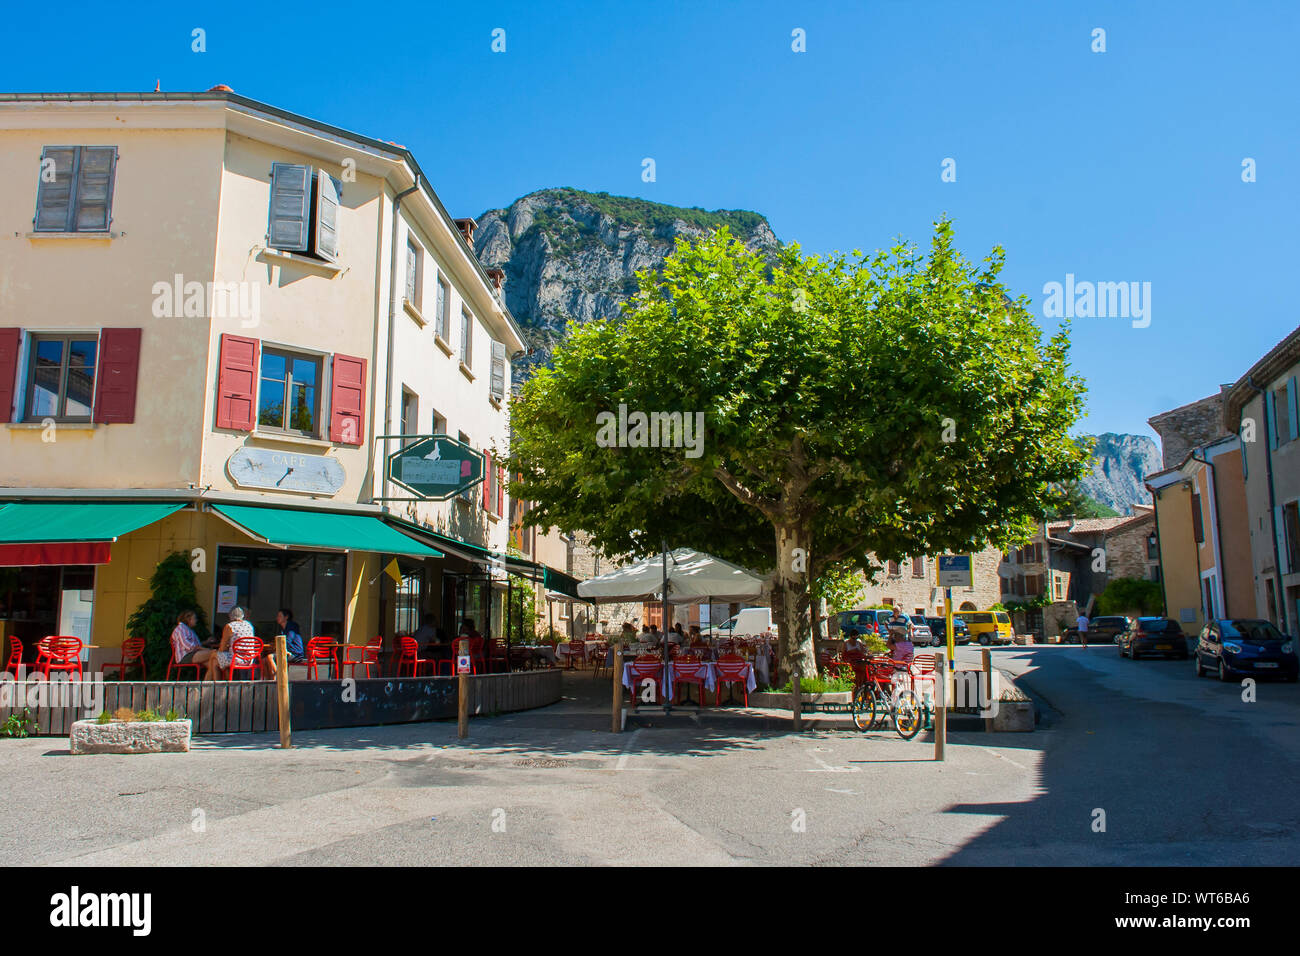 3 agosto 2015 un piccolo cafe la bordatura di un tipico villaggio francese quadrato in Drome regione di stile provenzale nel Sud Est della Francia Foto Stock